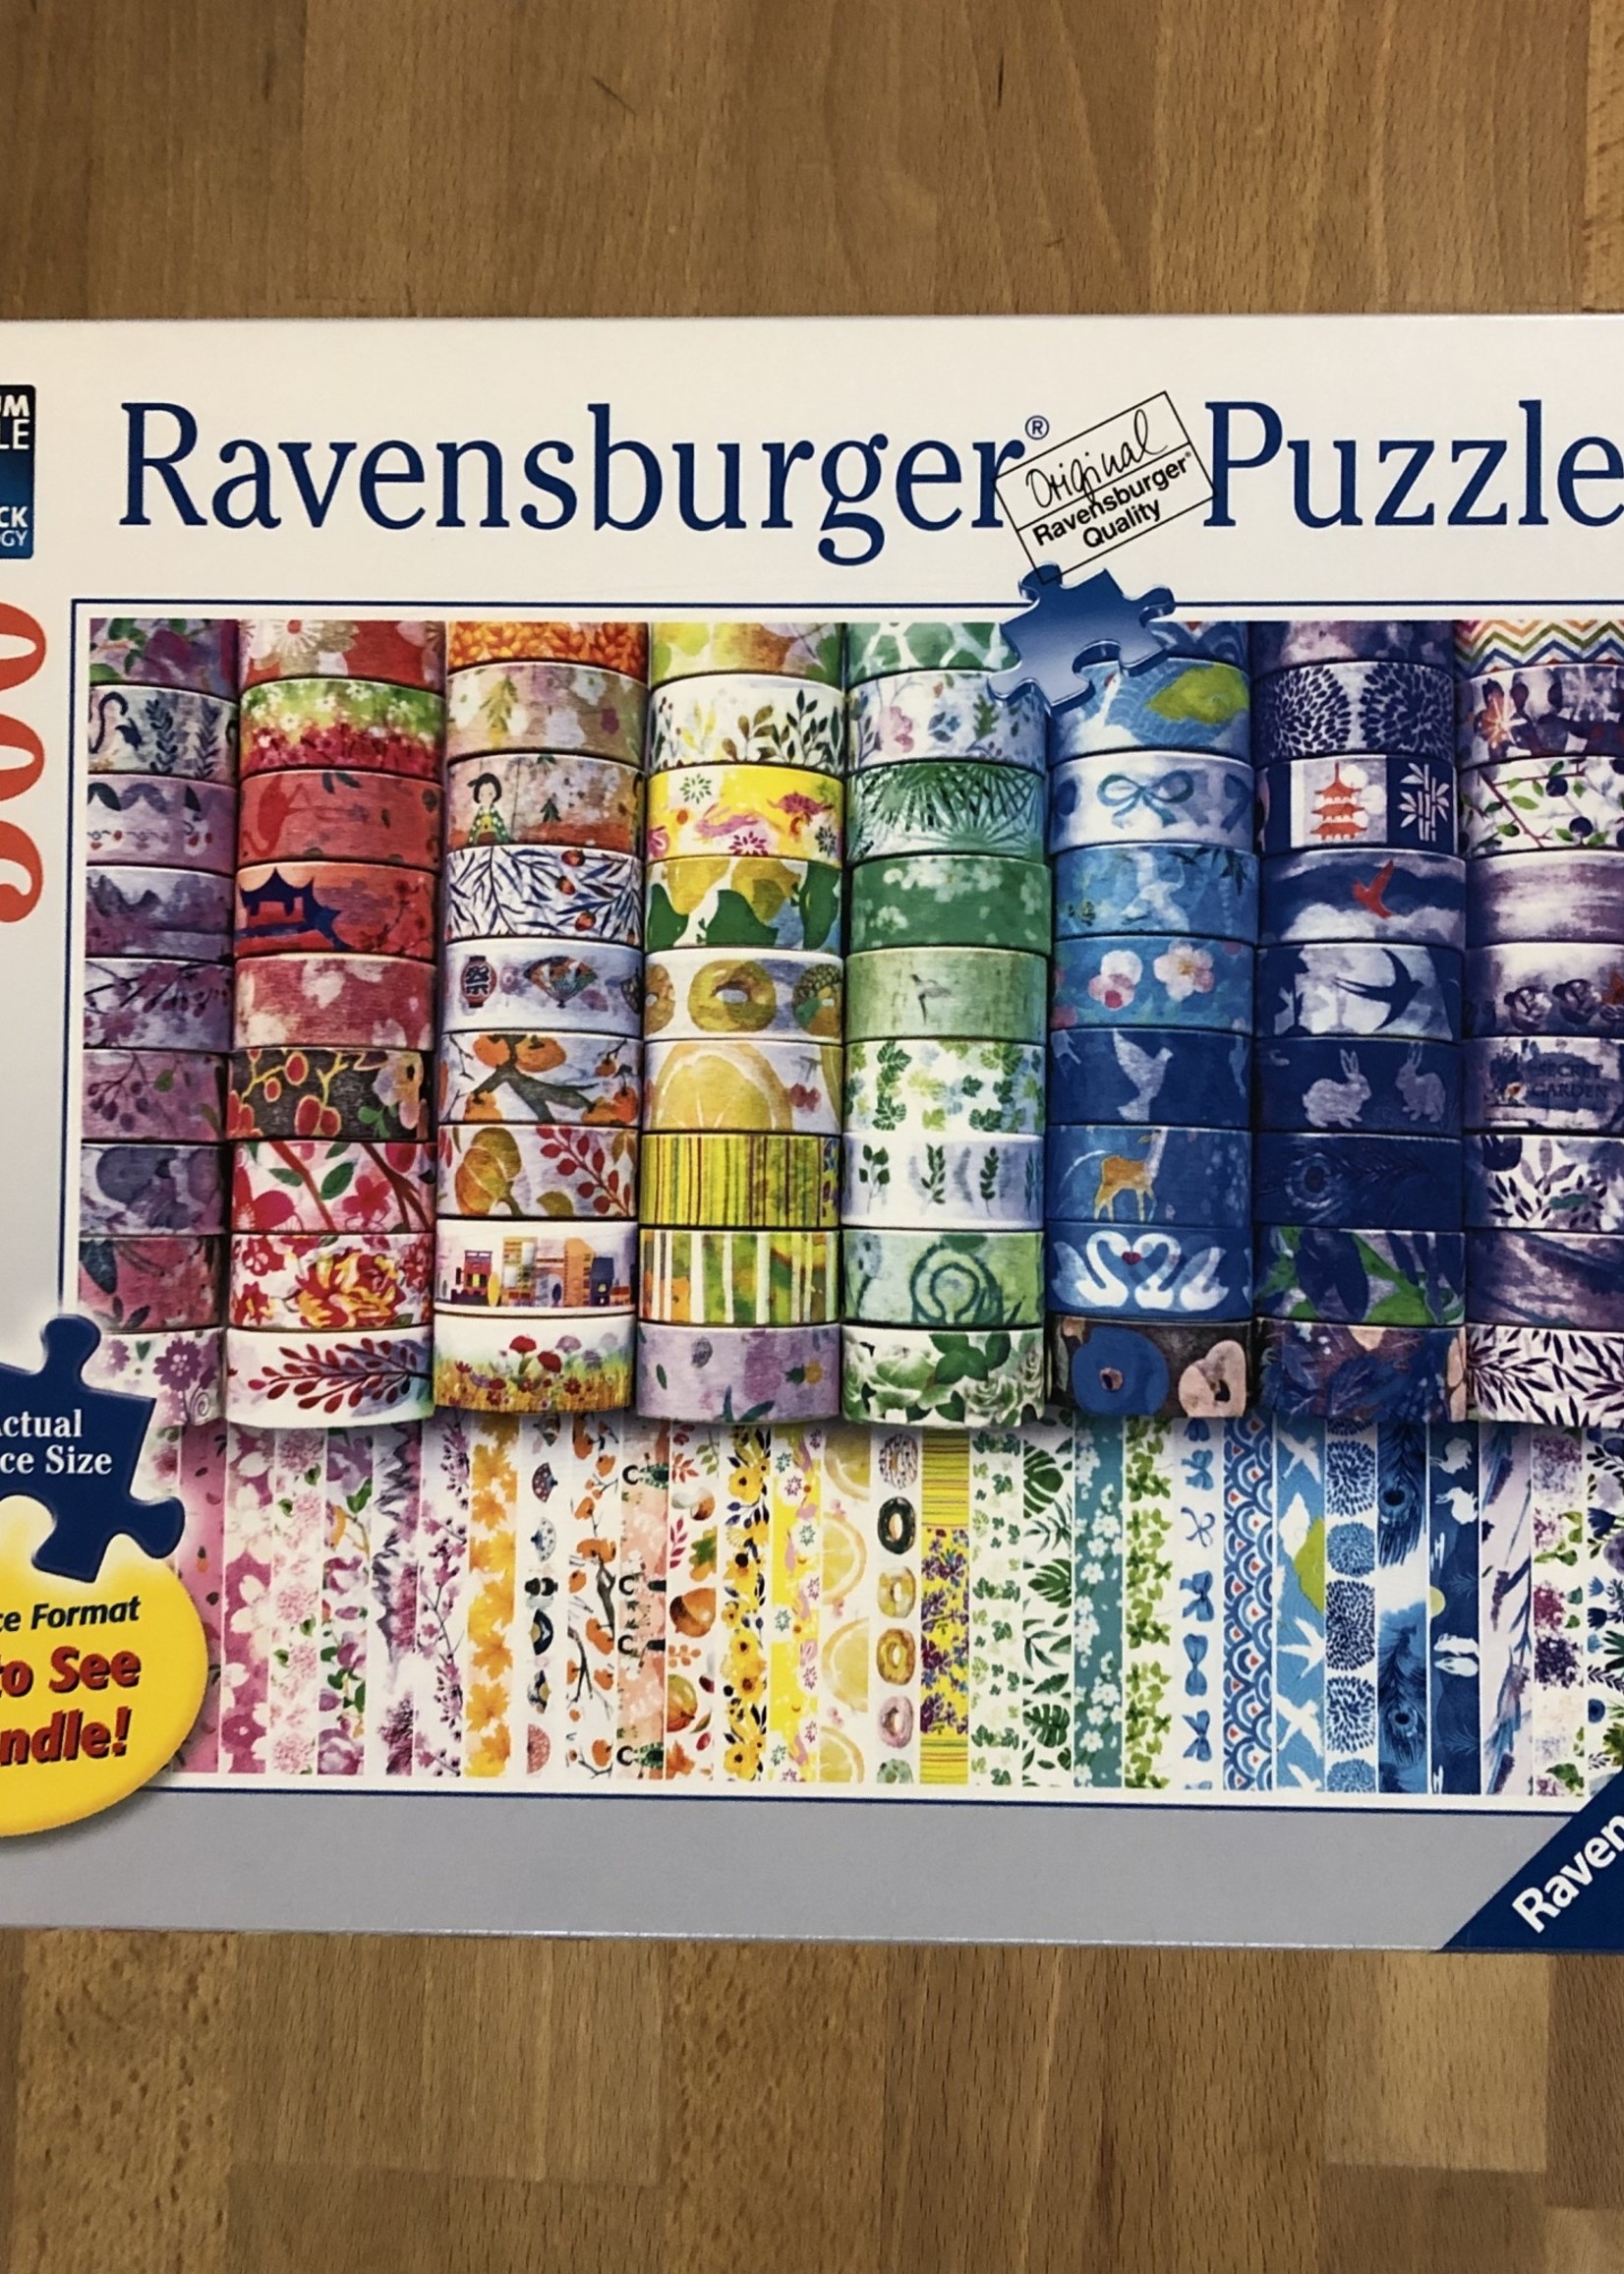 Ravensburger Puzzle - Ravensburger Washi Wishes 300pc